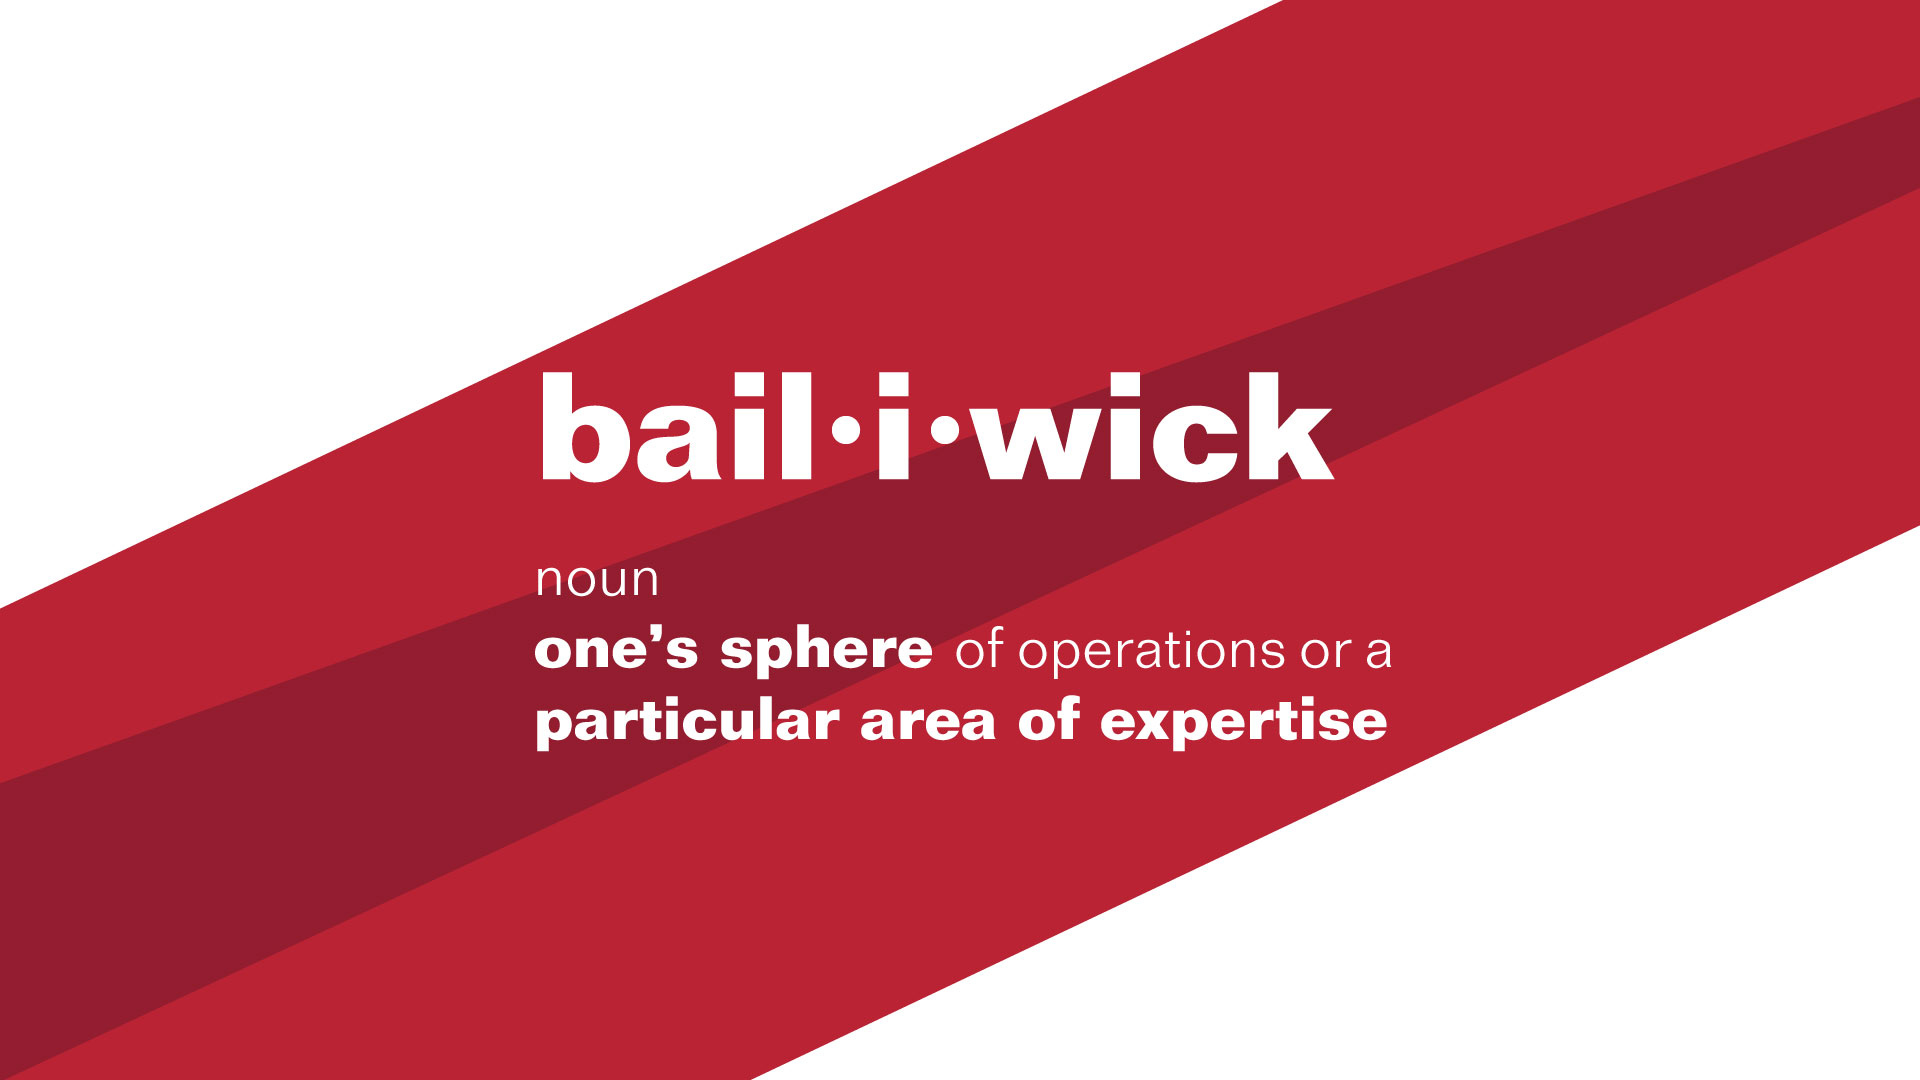 Bailiwick definition image